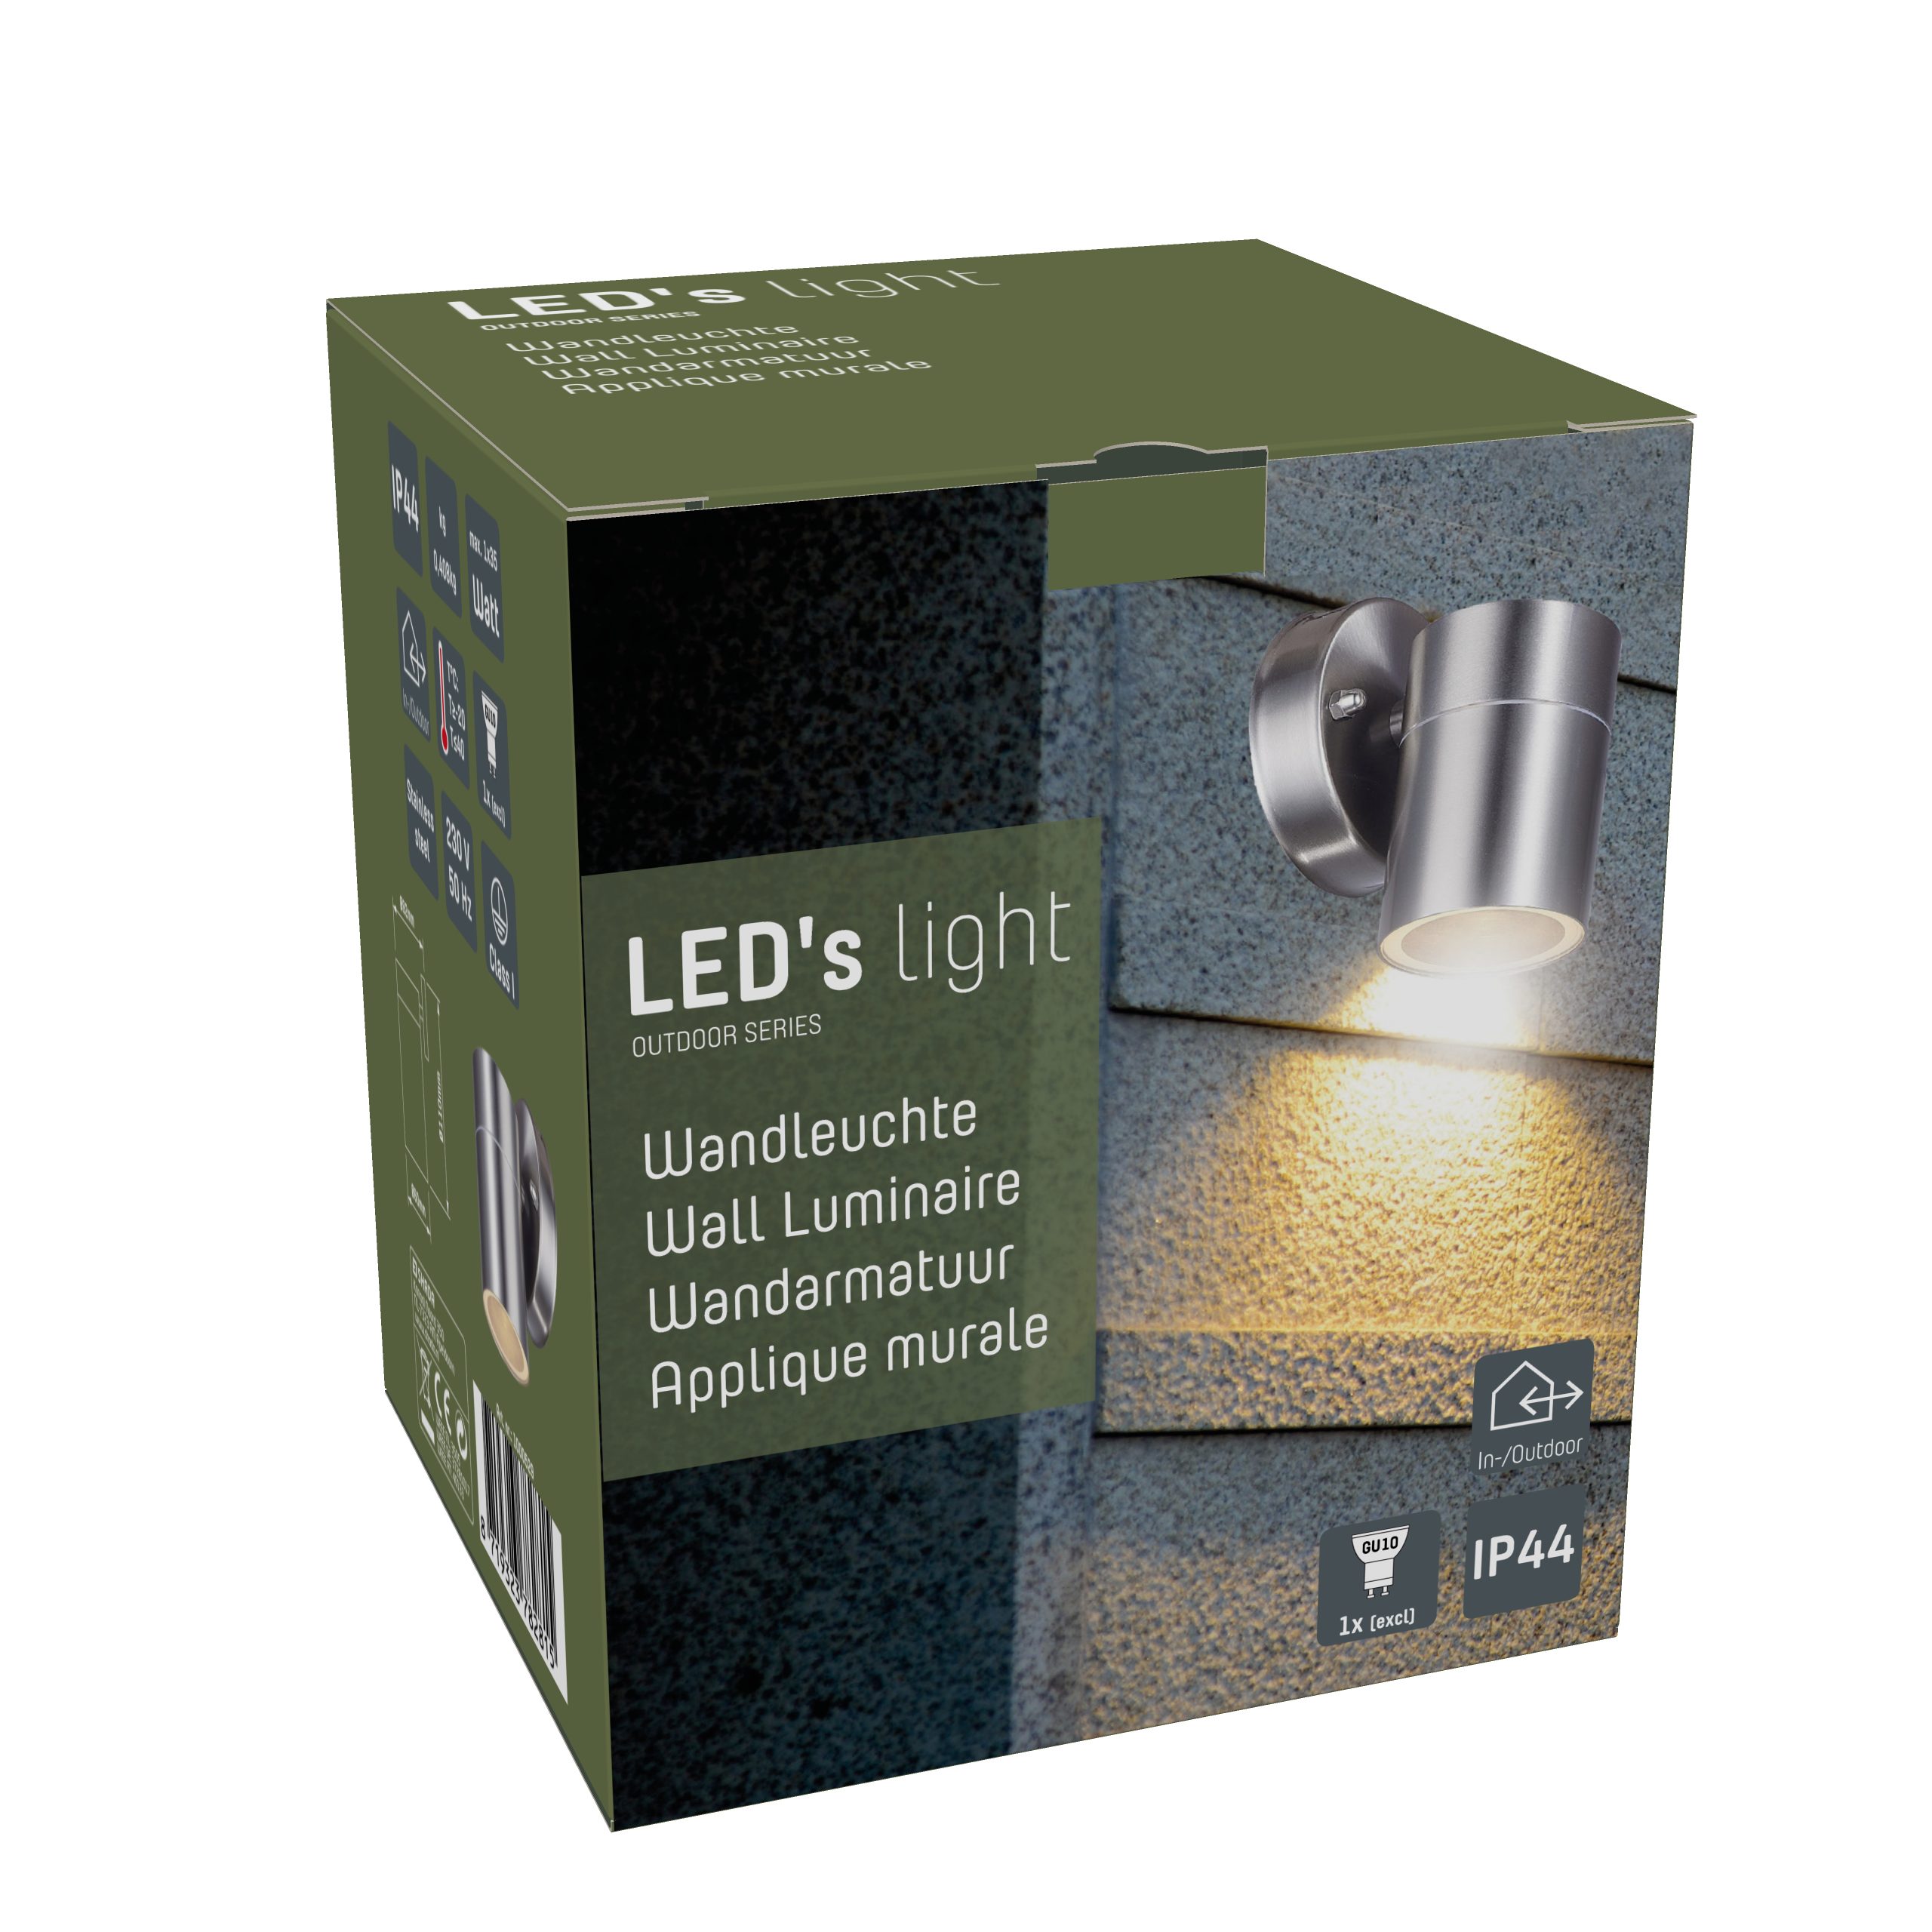 35W für GU10 Außen-Wandleuchte, LED, Halogen LED bis 1x Außen-Wandleuchte Edelstahl IP44 LED's LED light 1000529 und